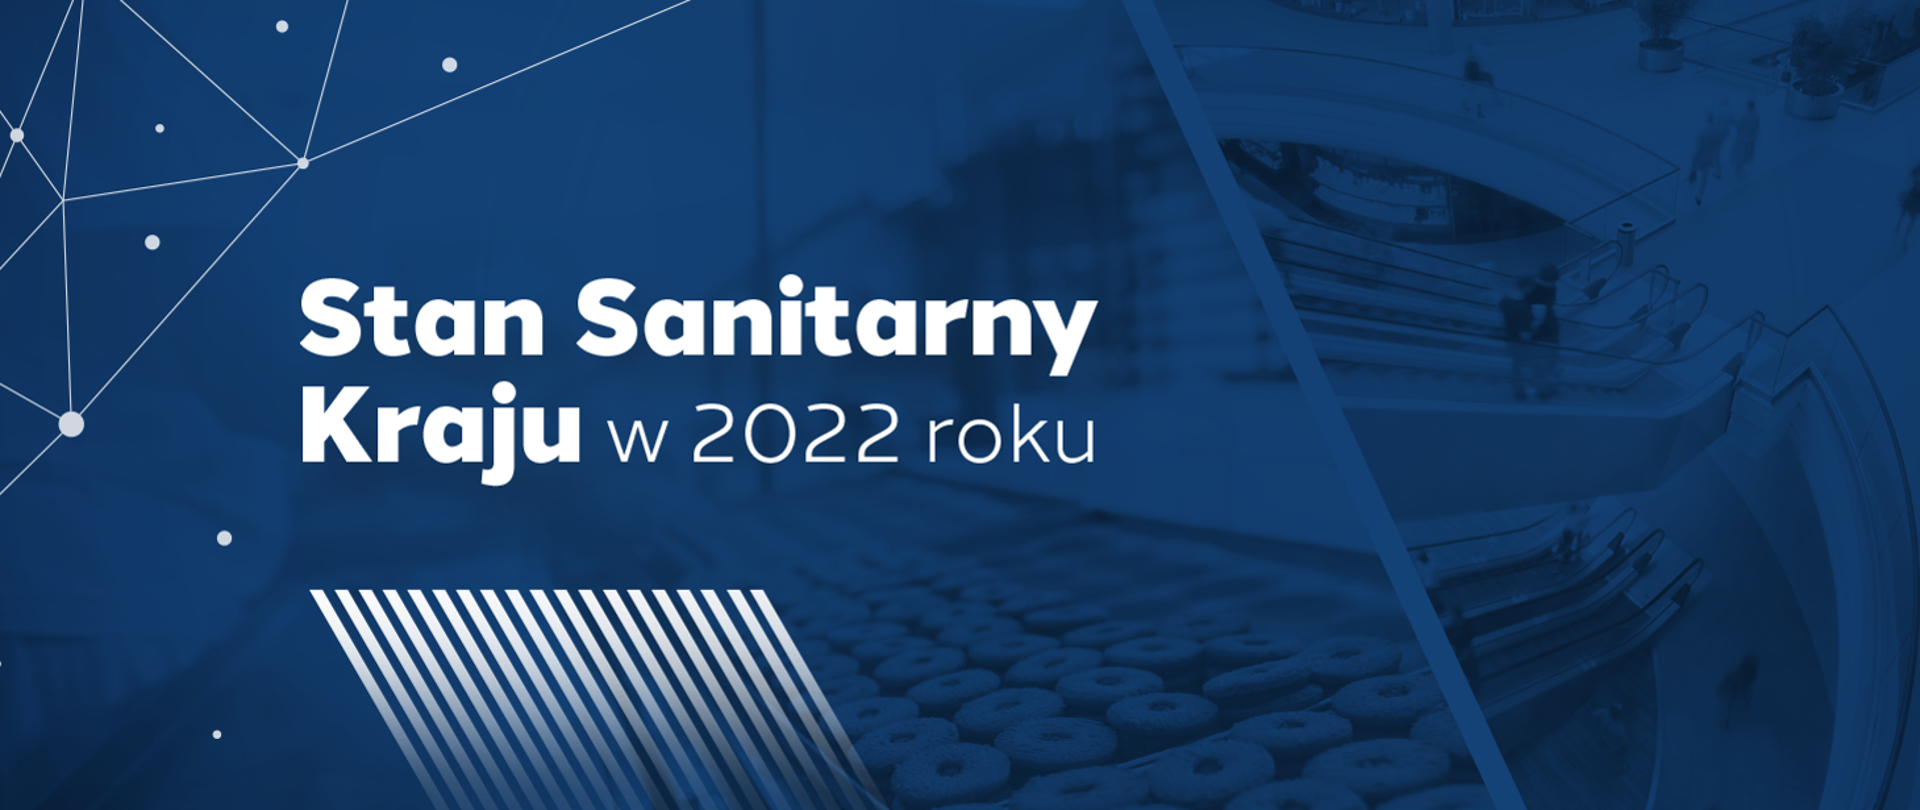 Stan_Sanitarny_Kraju_w_2022_roku